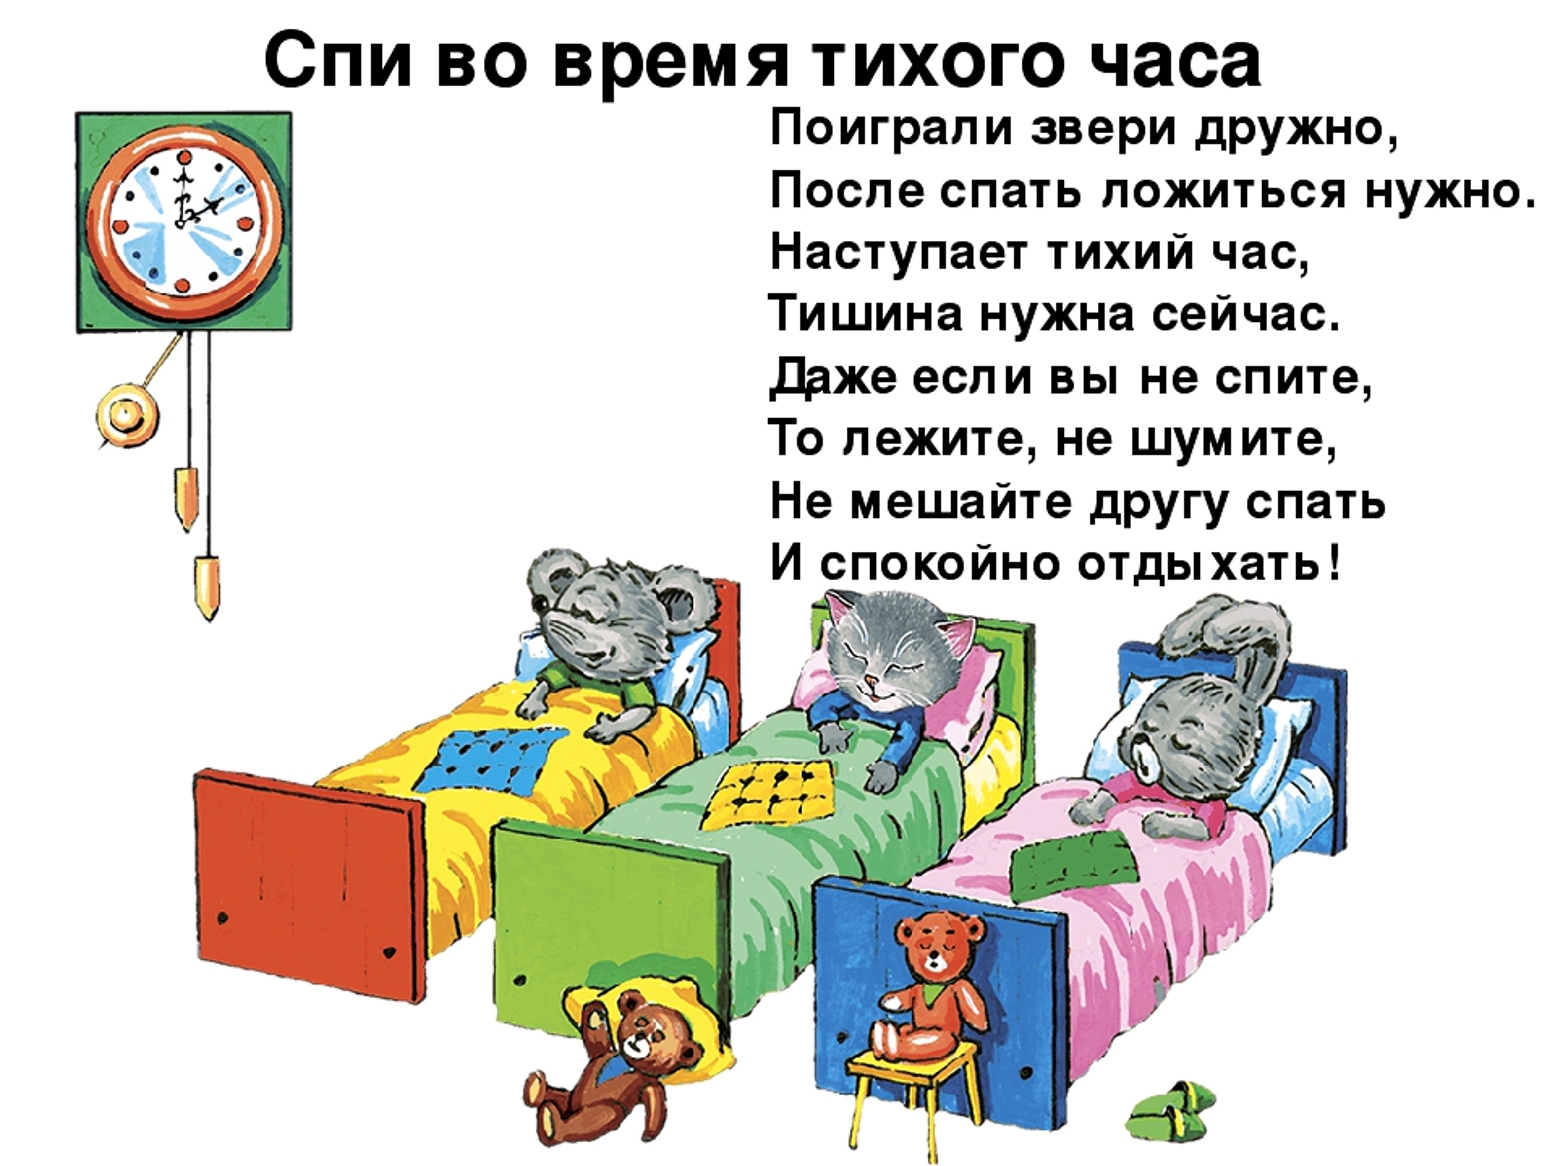 Игра уложи спать. Стих про тихий час. Правила поведения в спальне в детском саду. Тихий час стихи для детей. Дети в детском саду тихий час.